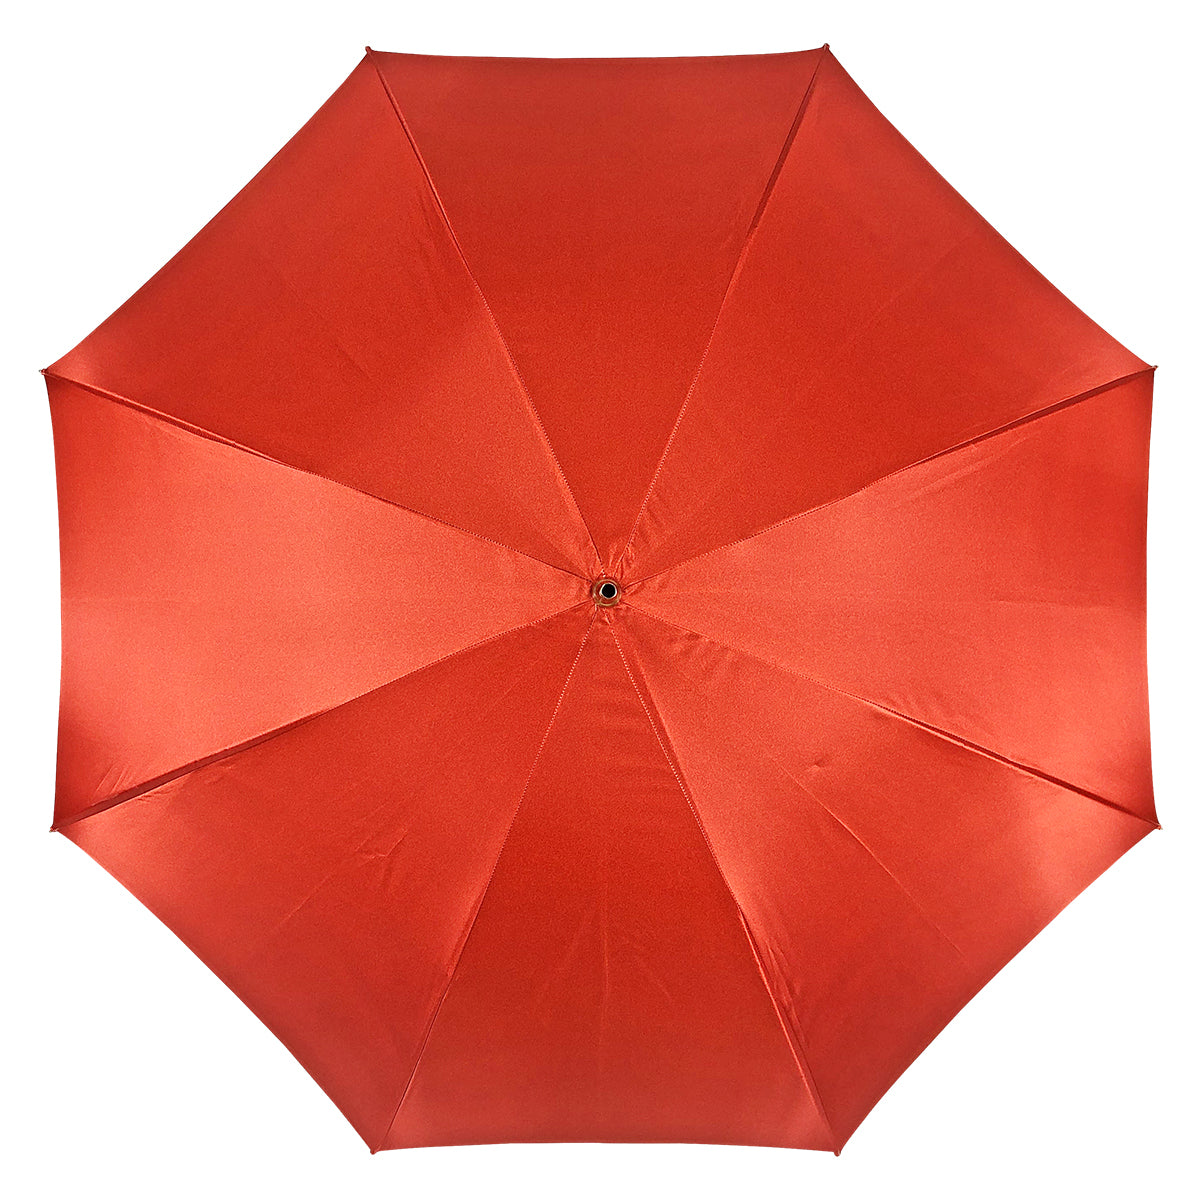 Fantastico ombrello rosso con stile egiziano